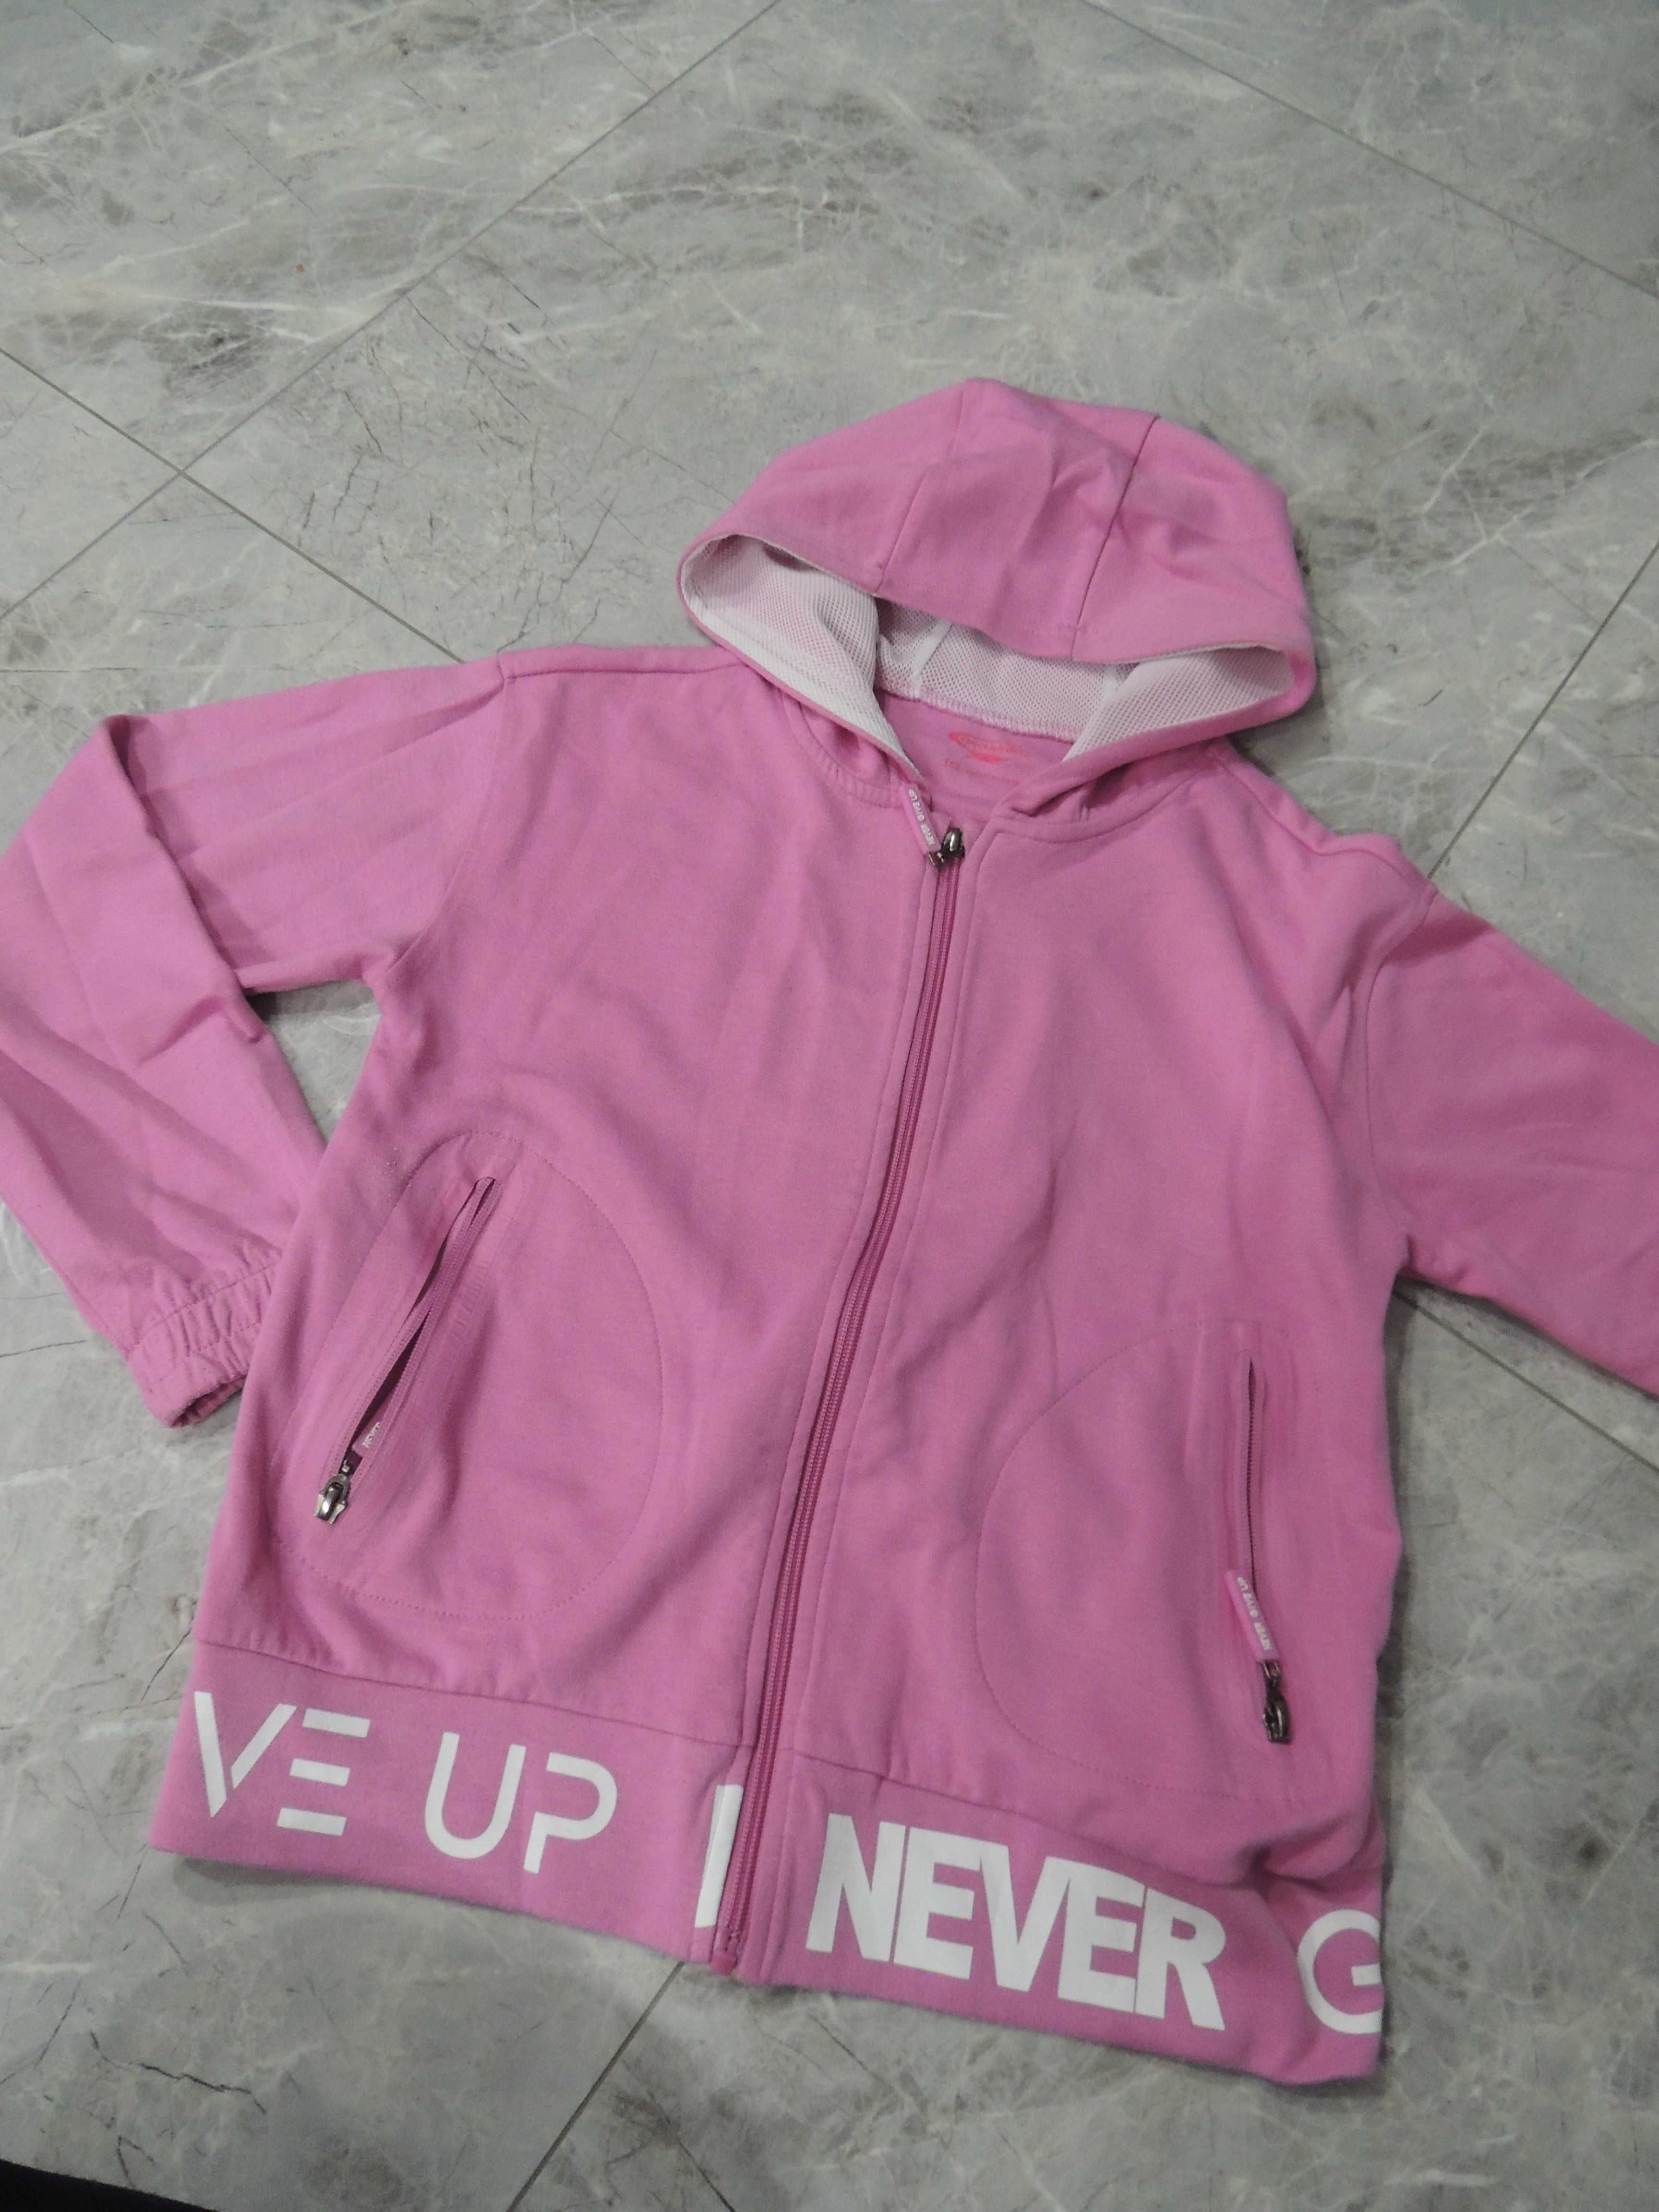 damska sportowa różowa bluza z napisem never give up xs s